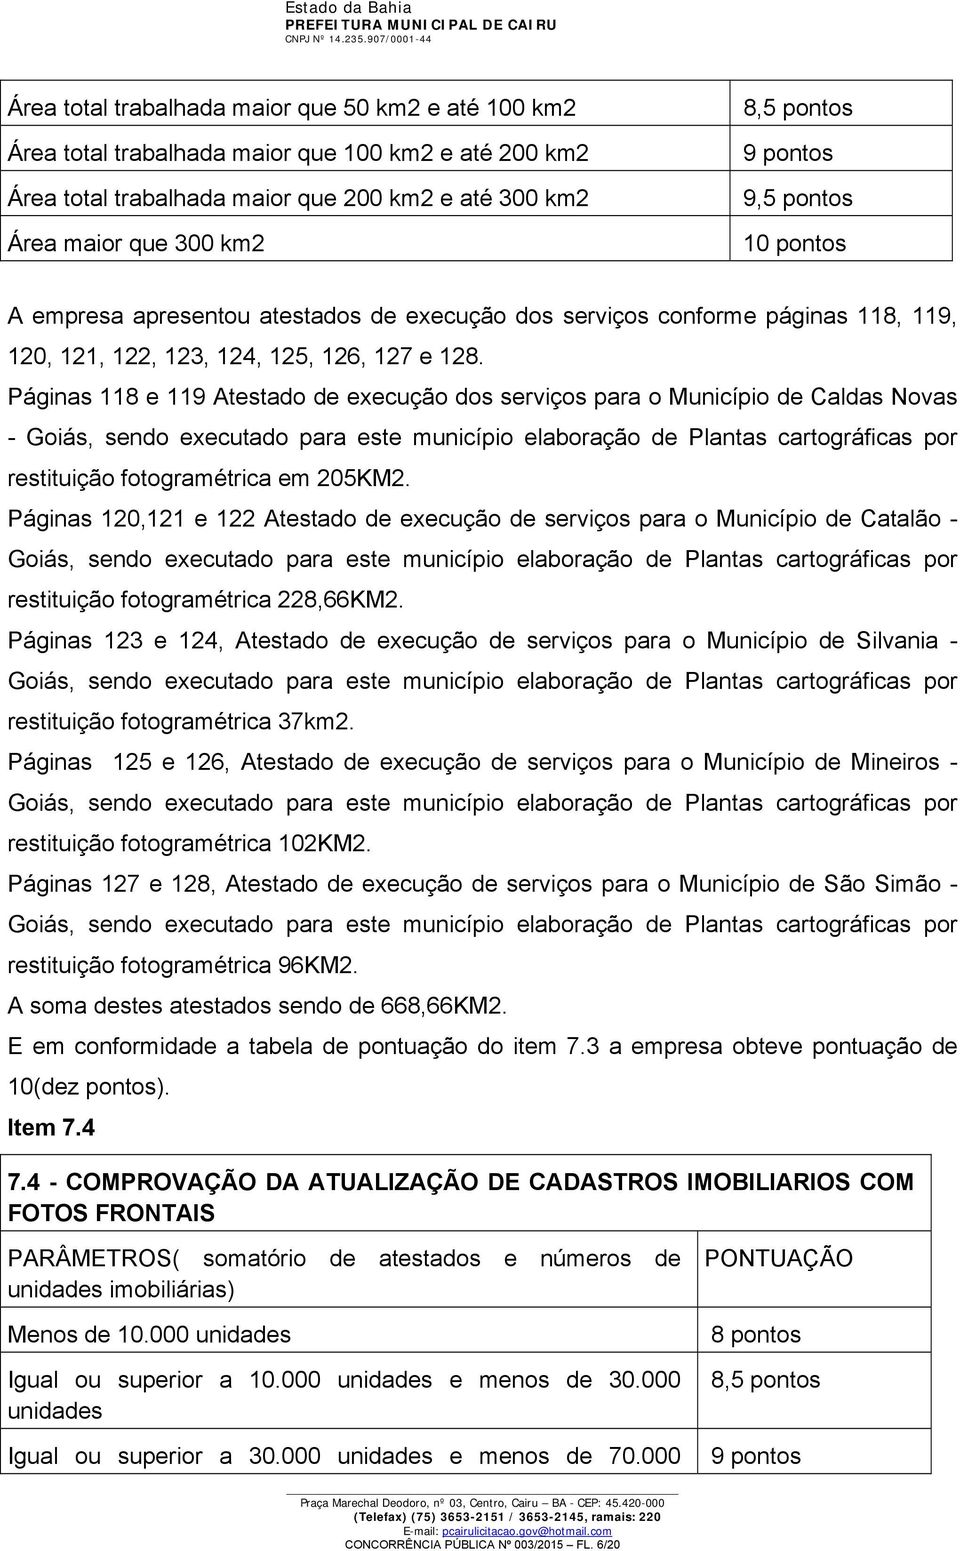 Páginas 118 e 119 Atestado de execução dos serviços para o Município de Caldas Novas - Goiás, sendo executado para este município elaboração de Plantas cartográficas por restituição fotogramétrica em